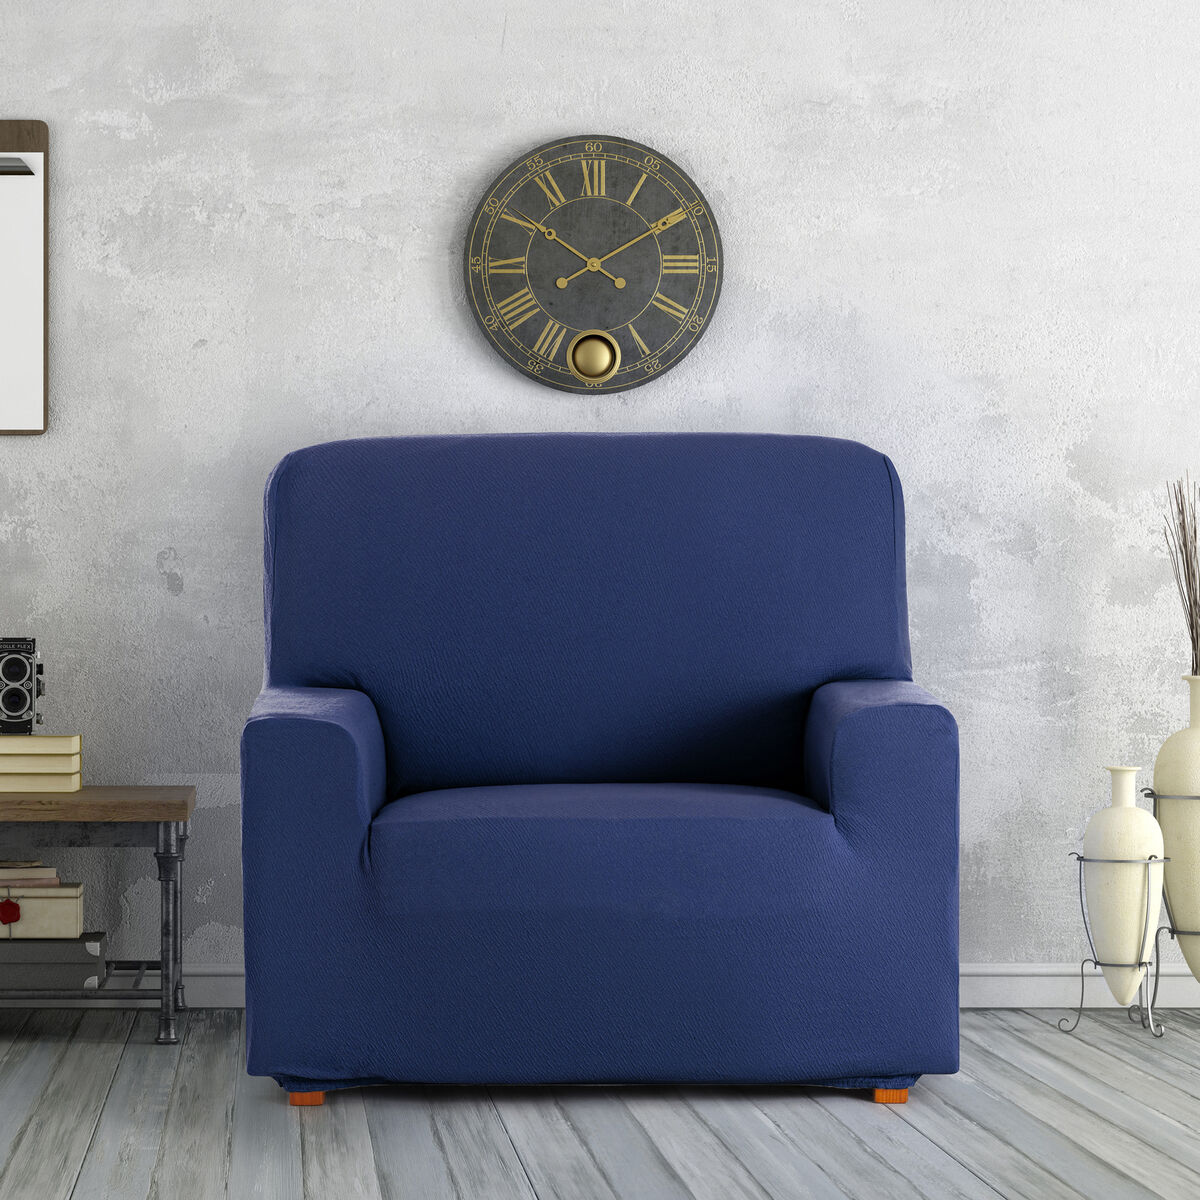 Armchair slipcovers Eysa BRONX Blue 70 x 110 x 110 cm